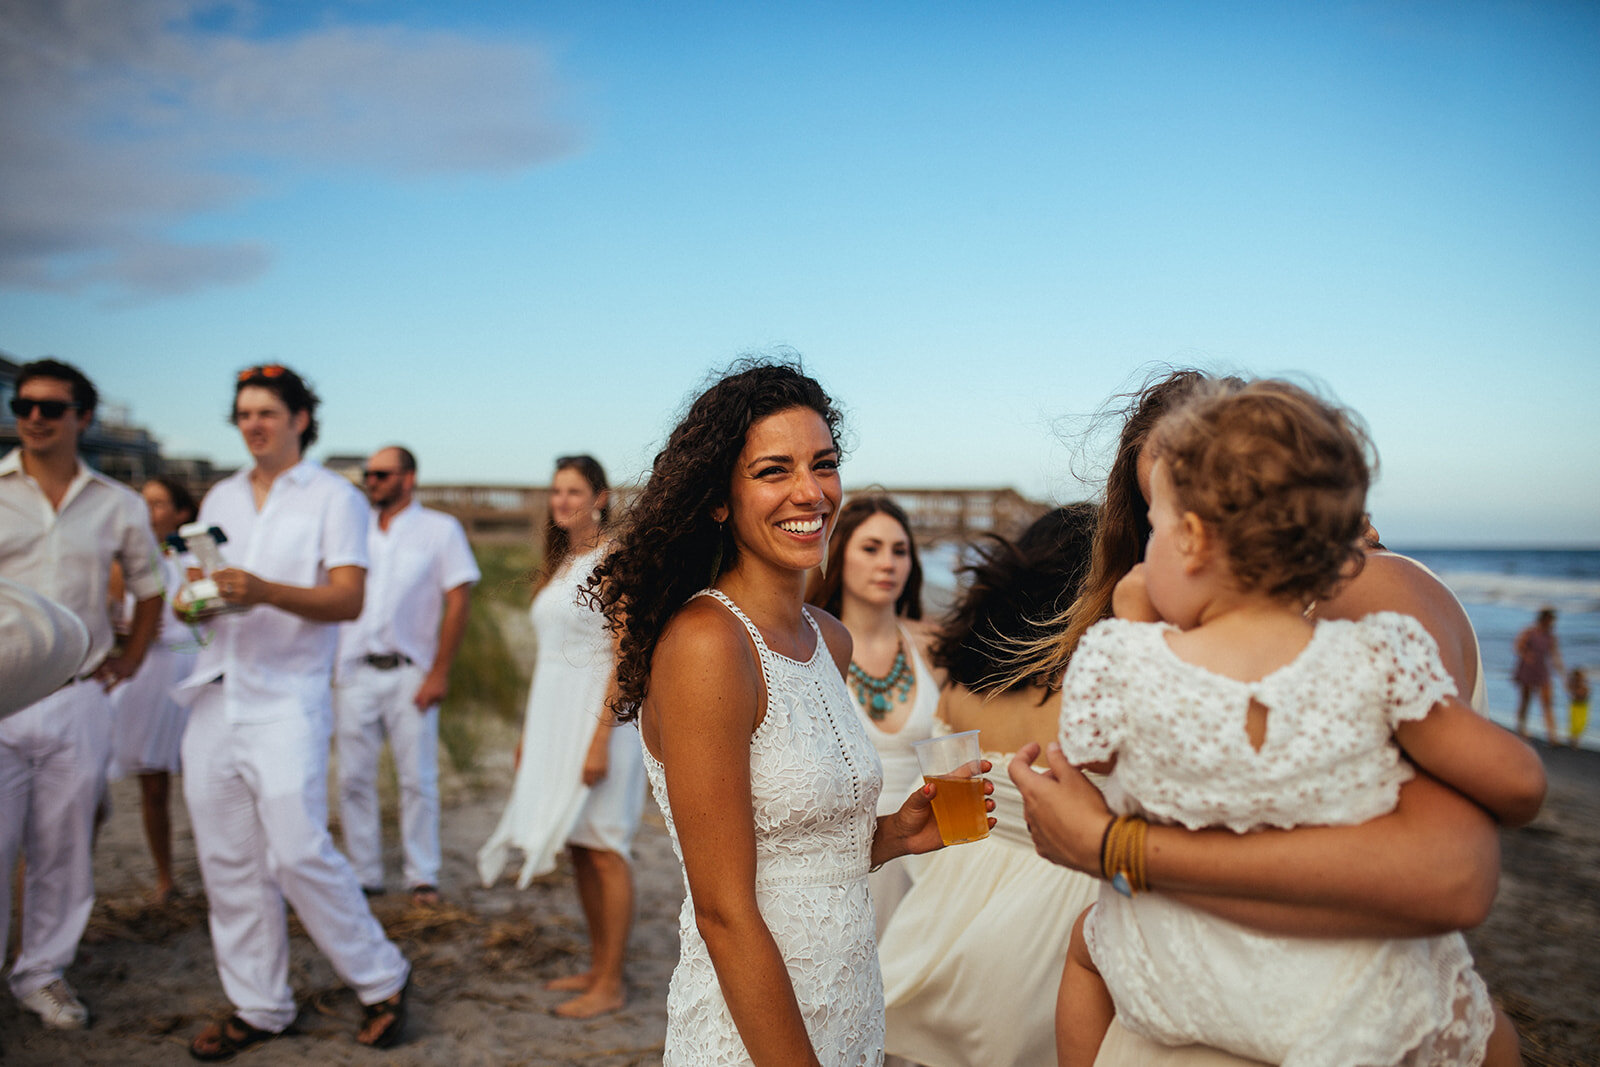 Wedding guests on Folly Beach Shawnee Custalow wedding photography